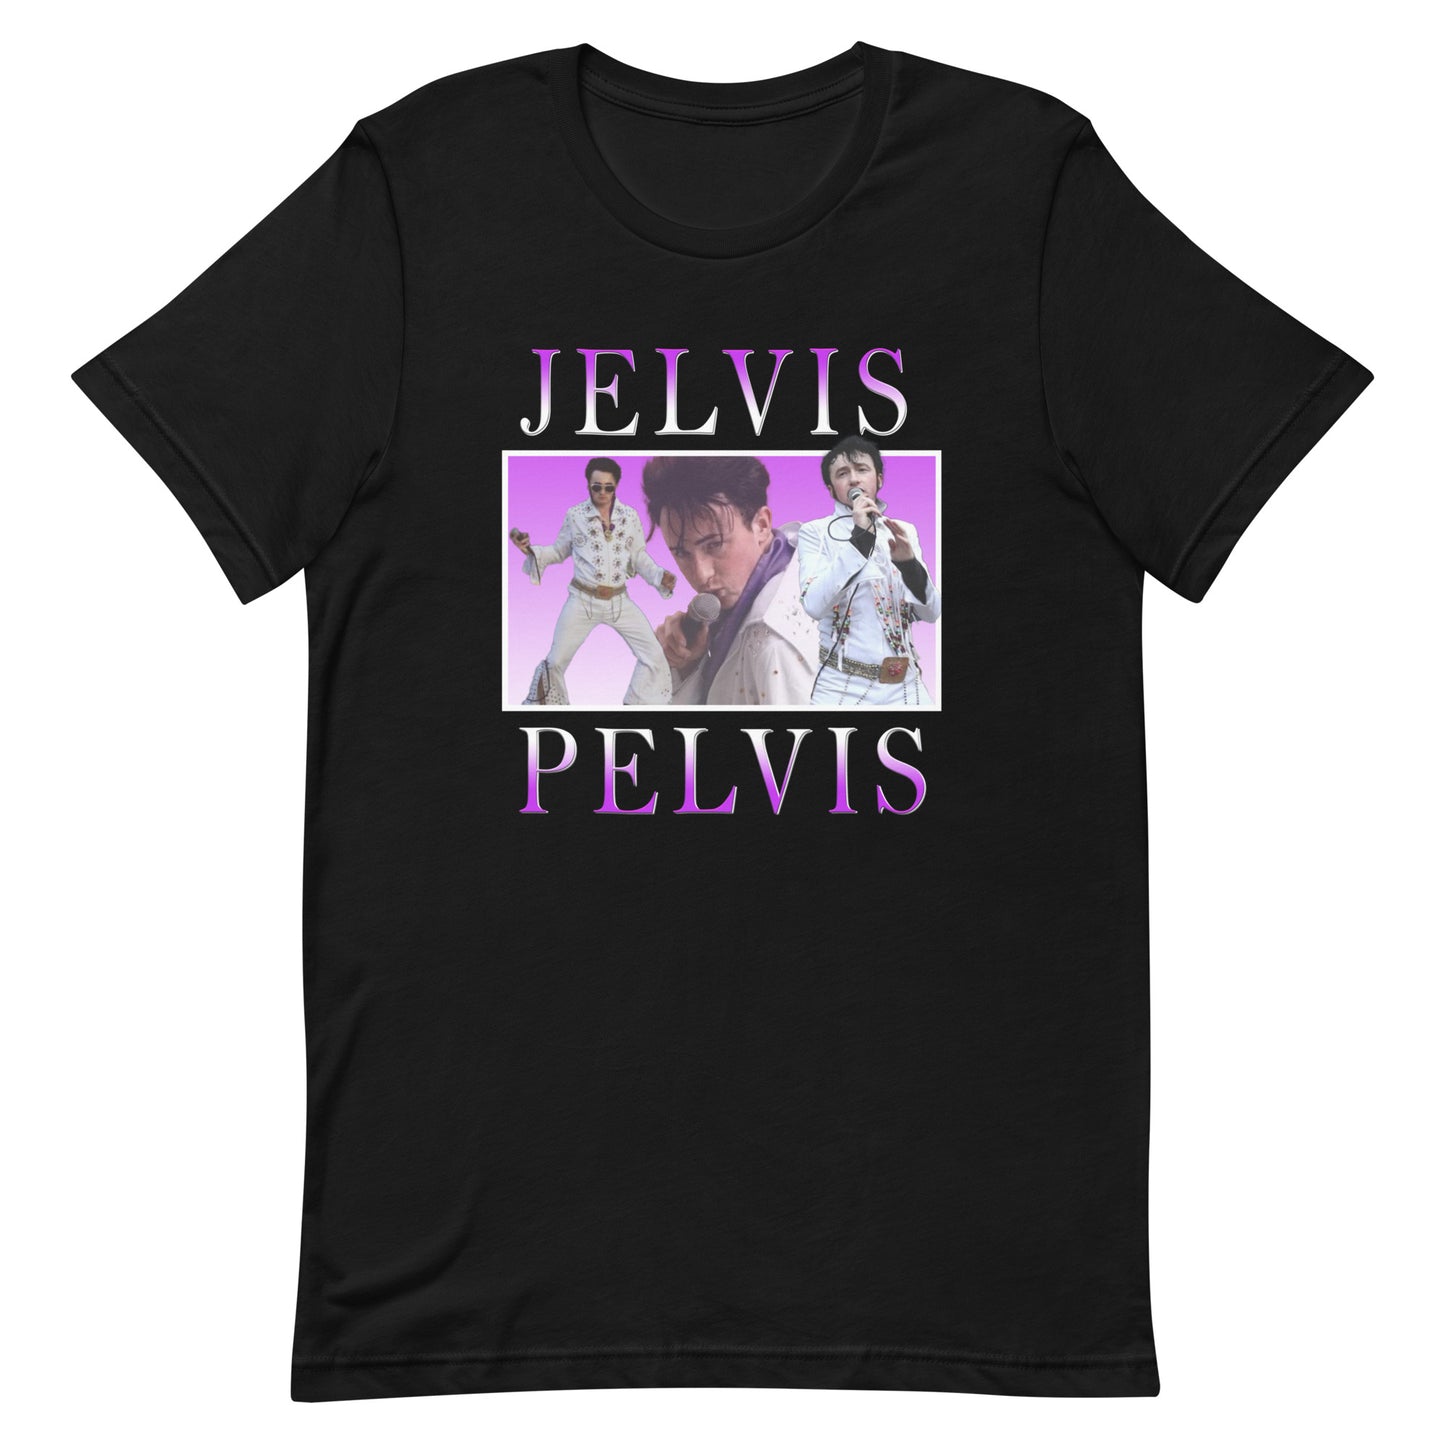 Premium Replica Jelvis Pelvis T-shirt